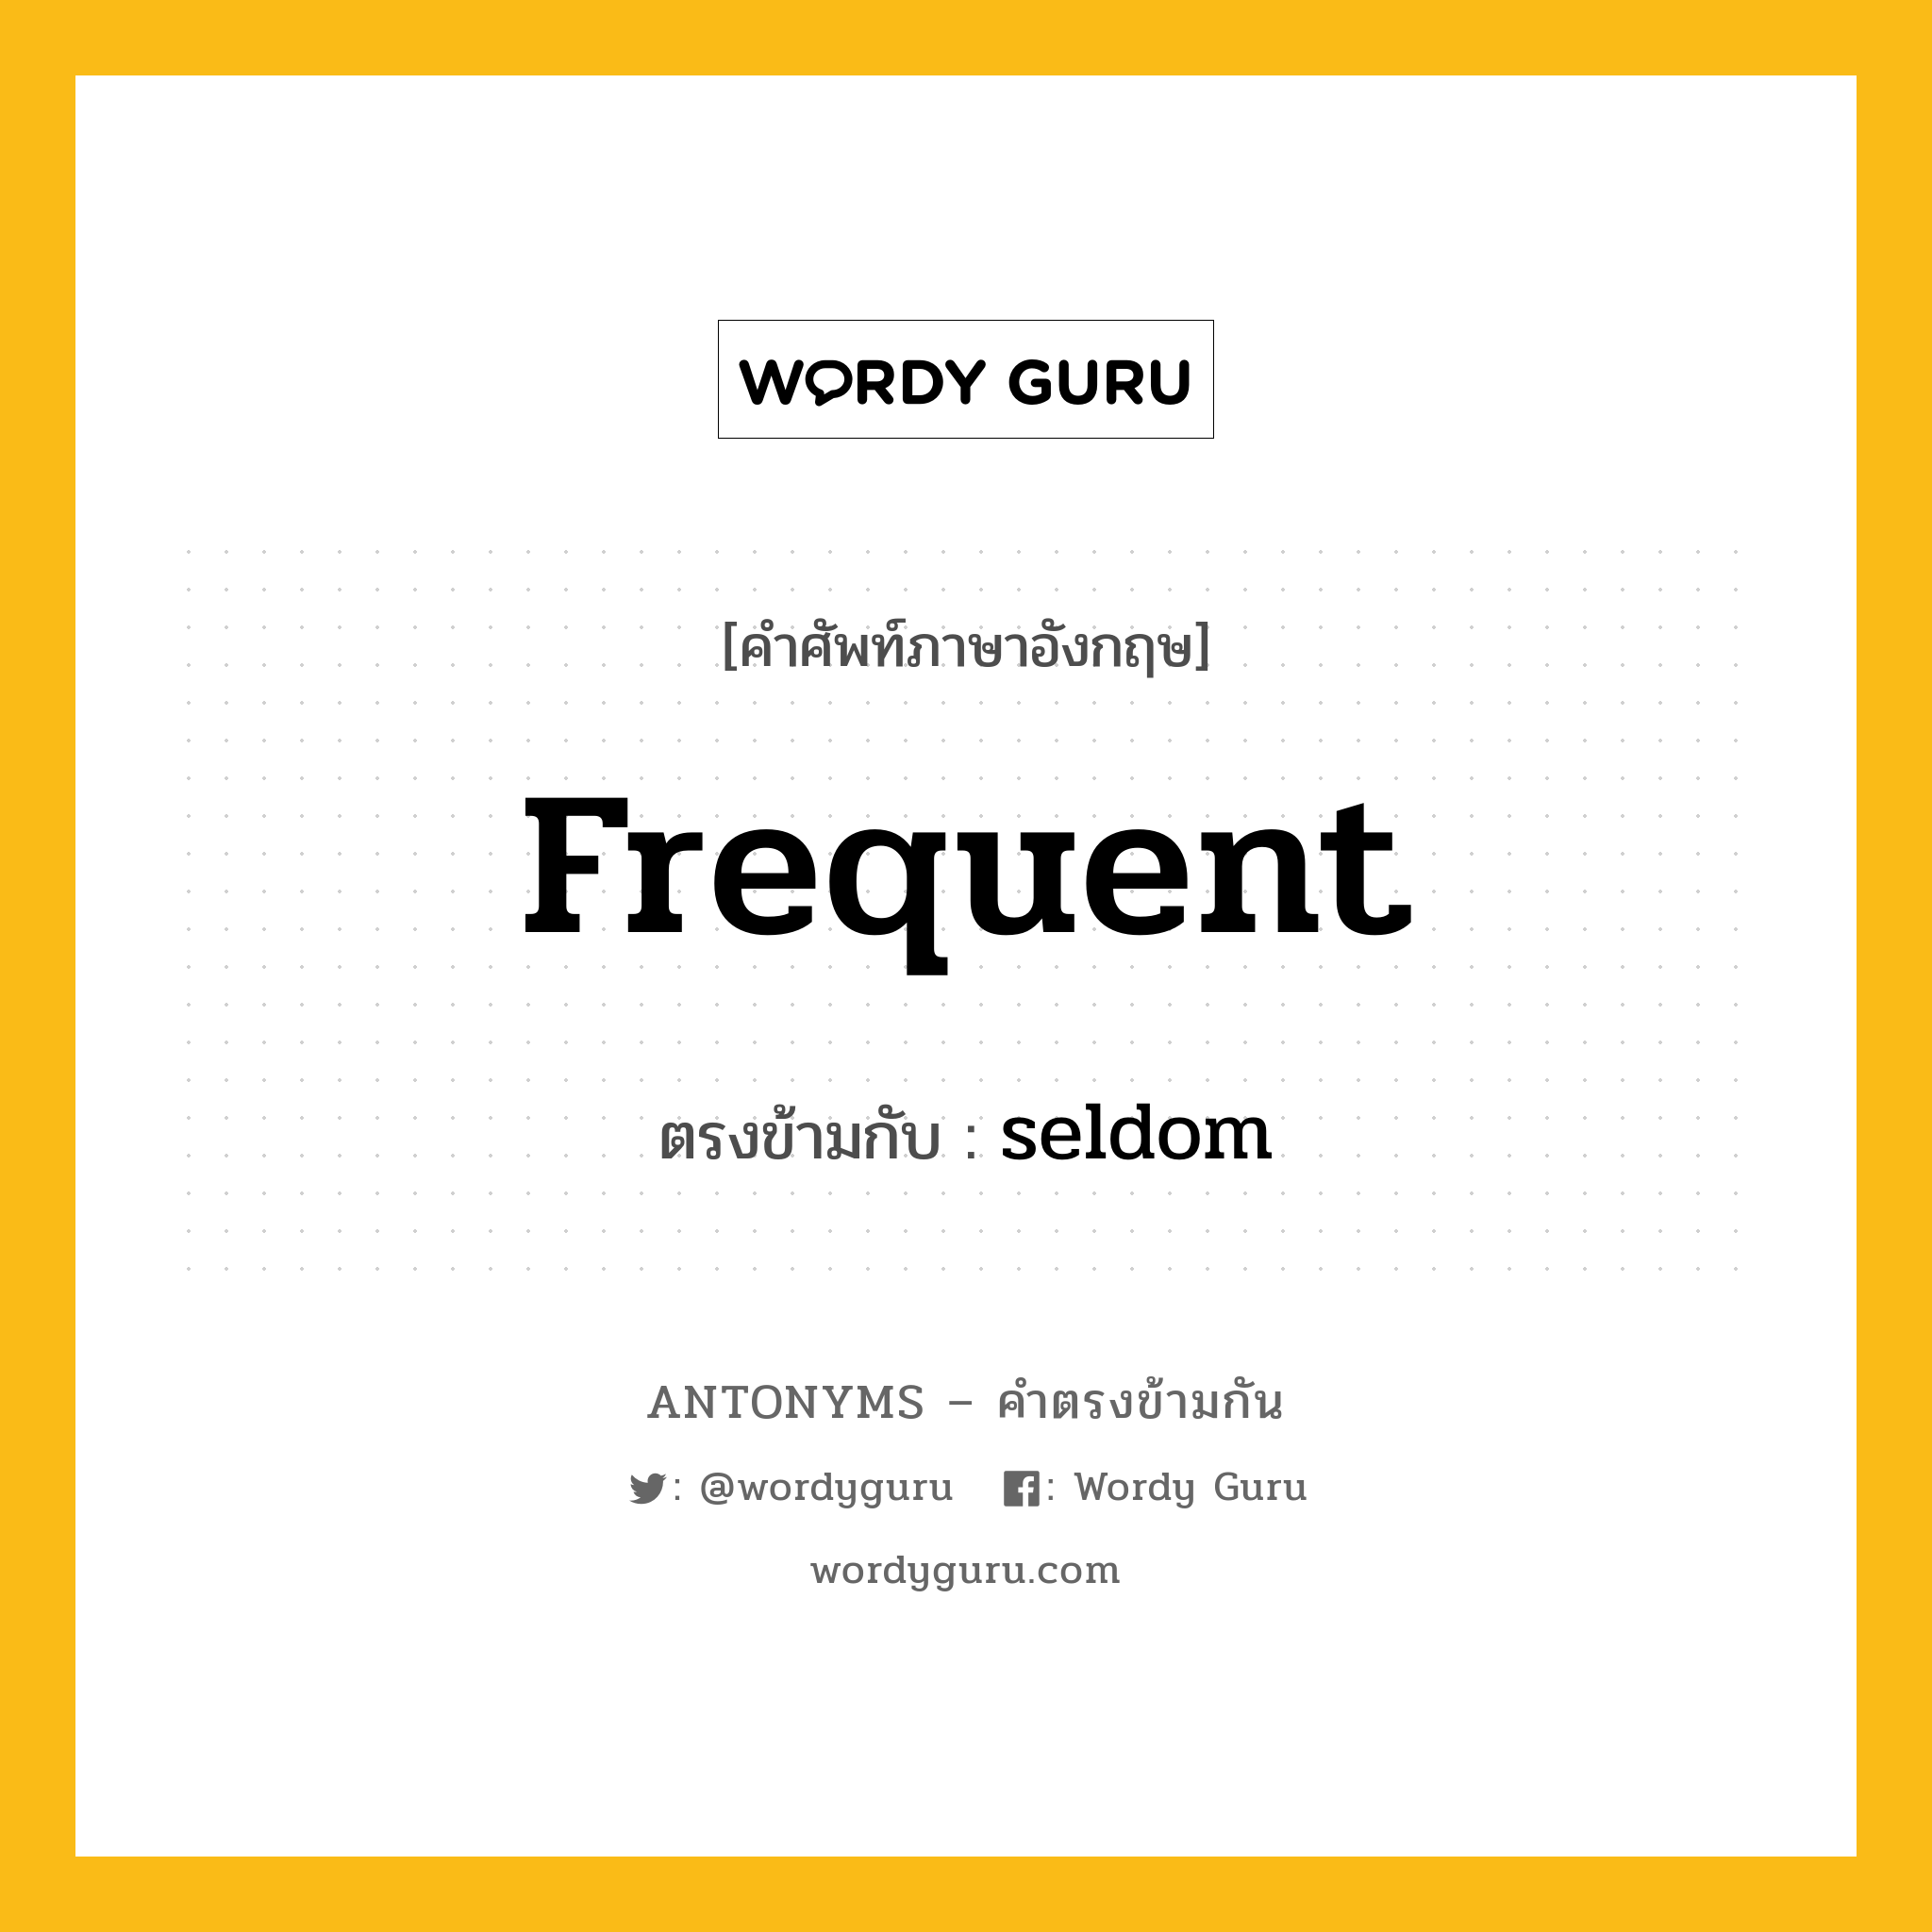 frequent เป็นคำตรงข้ามกับคำไหนบ้าง?, คำศัพท์ภาษาอังกฤษ frequent ตรงข้ามกับ seldom หมวด seldom